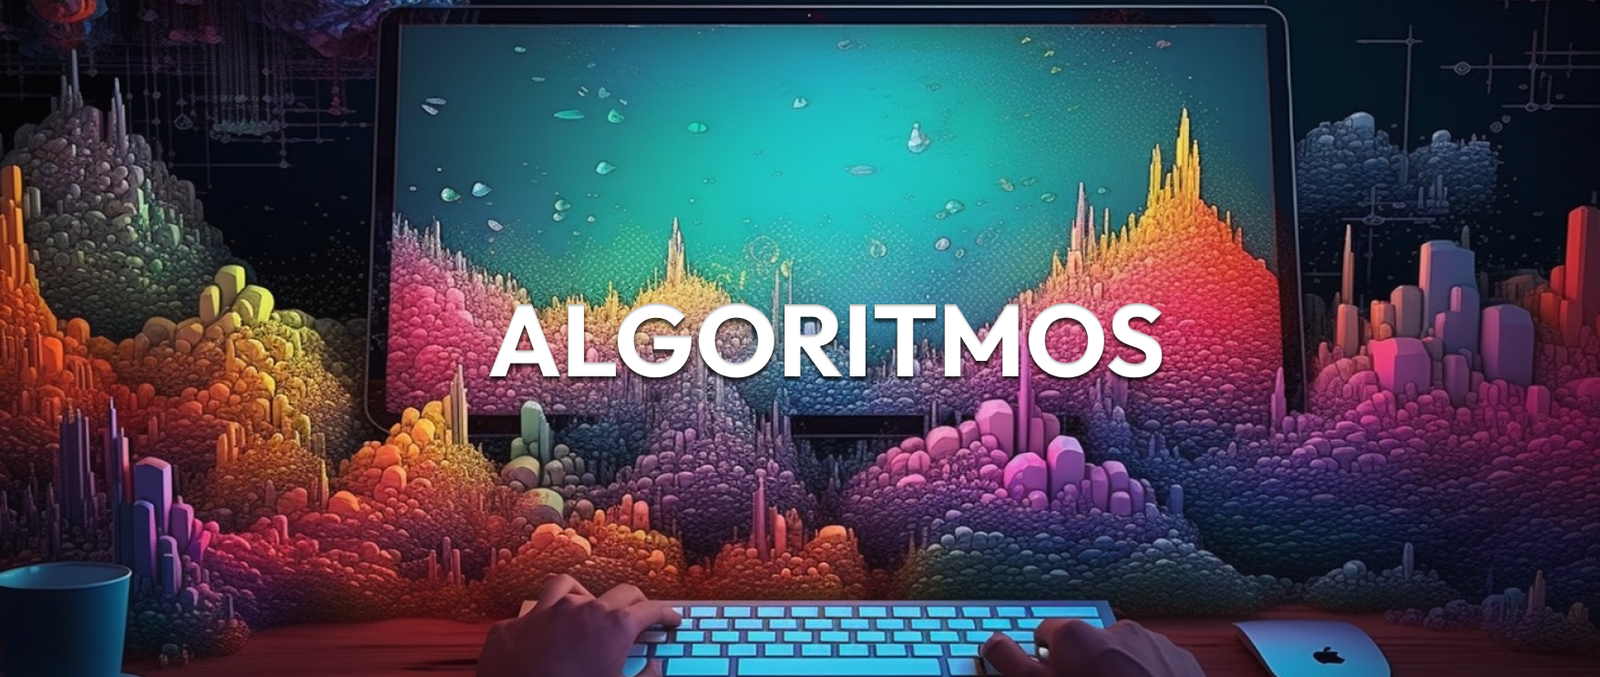  Algoritmos